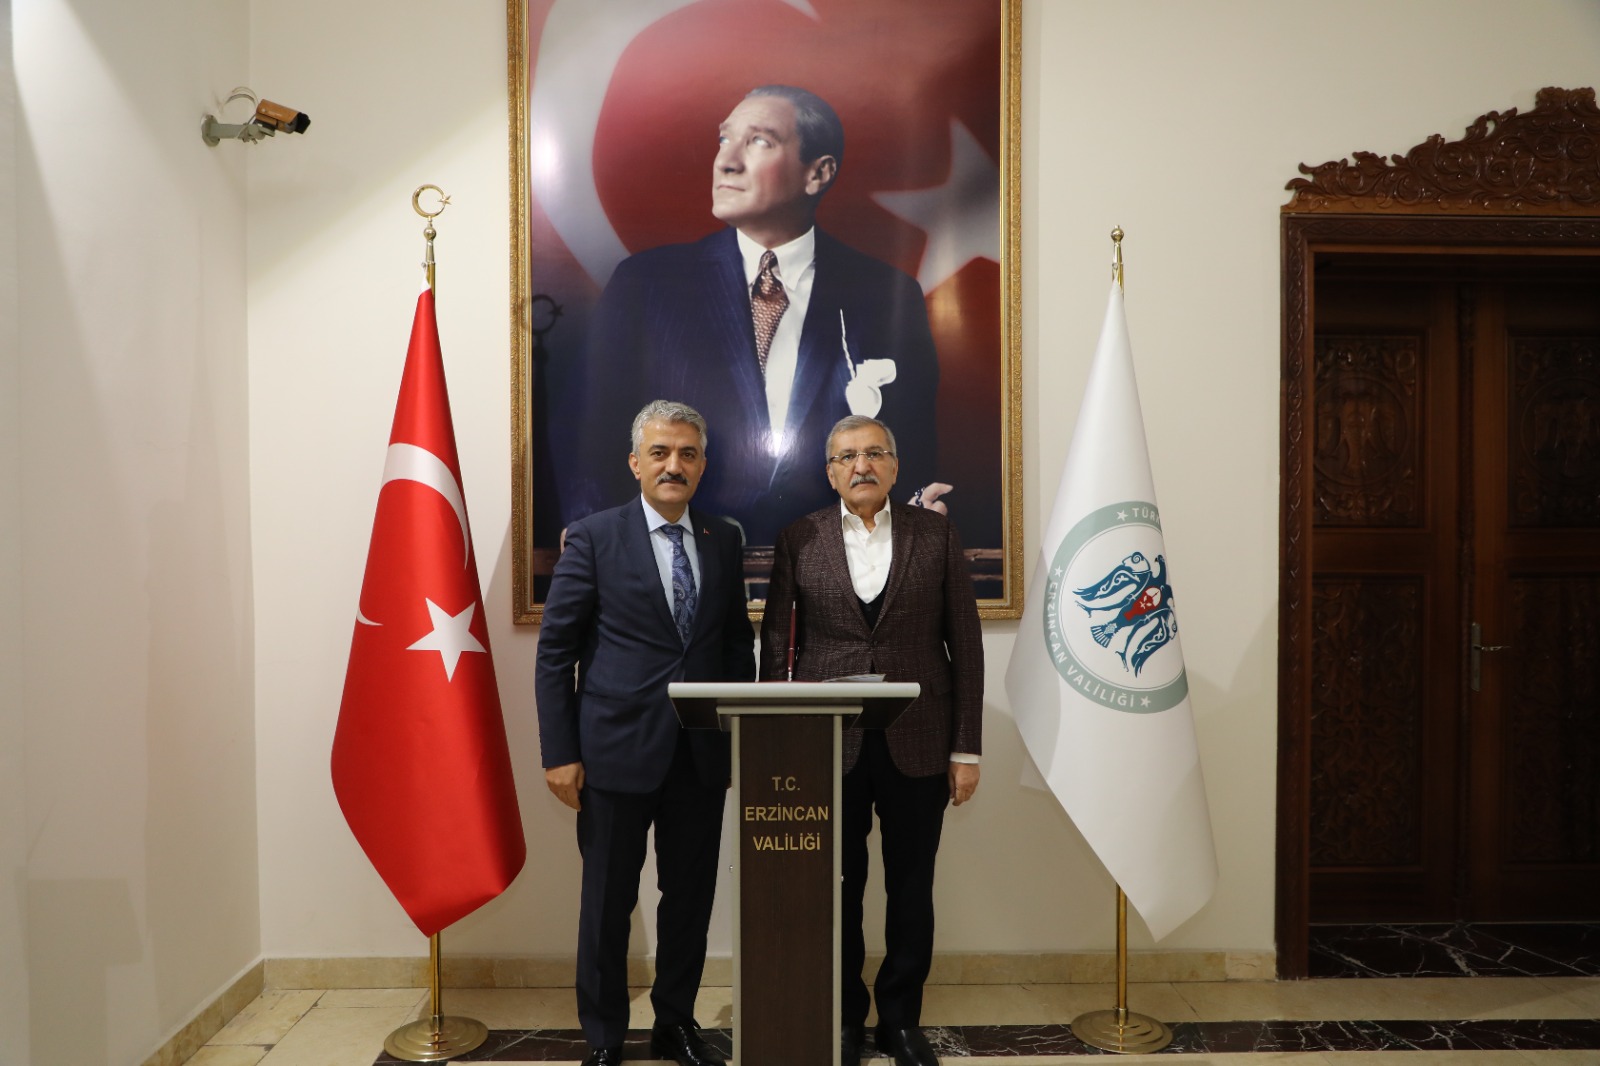 Beykoz Belediye Başkanı Murat Aydın ve Beraberindeki Heyet, Sayın Erzincan Valisii Ziyaret Etti